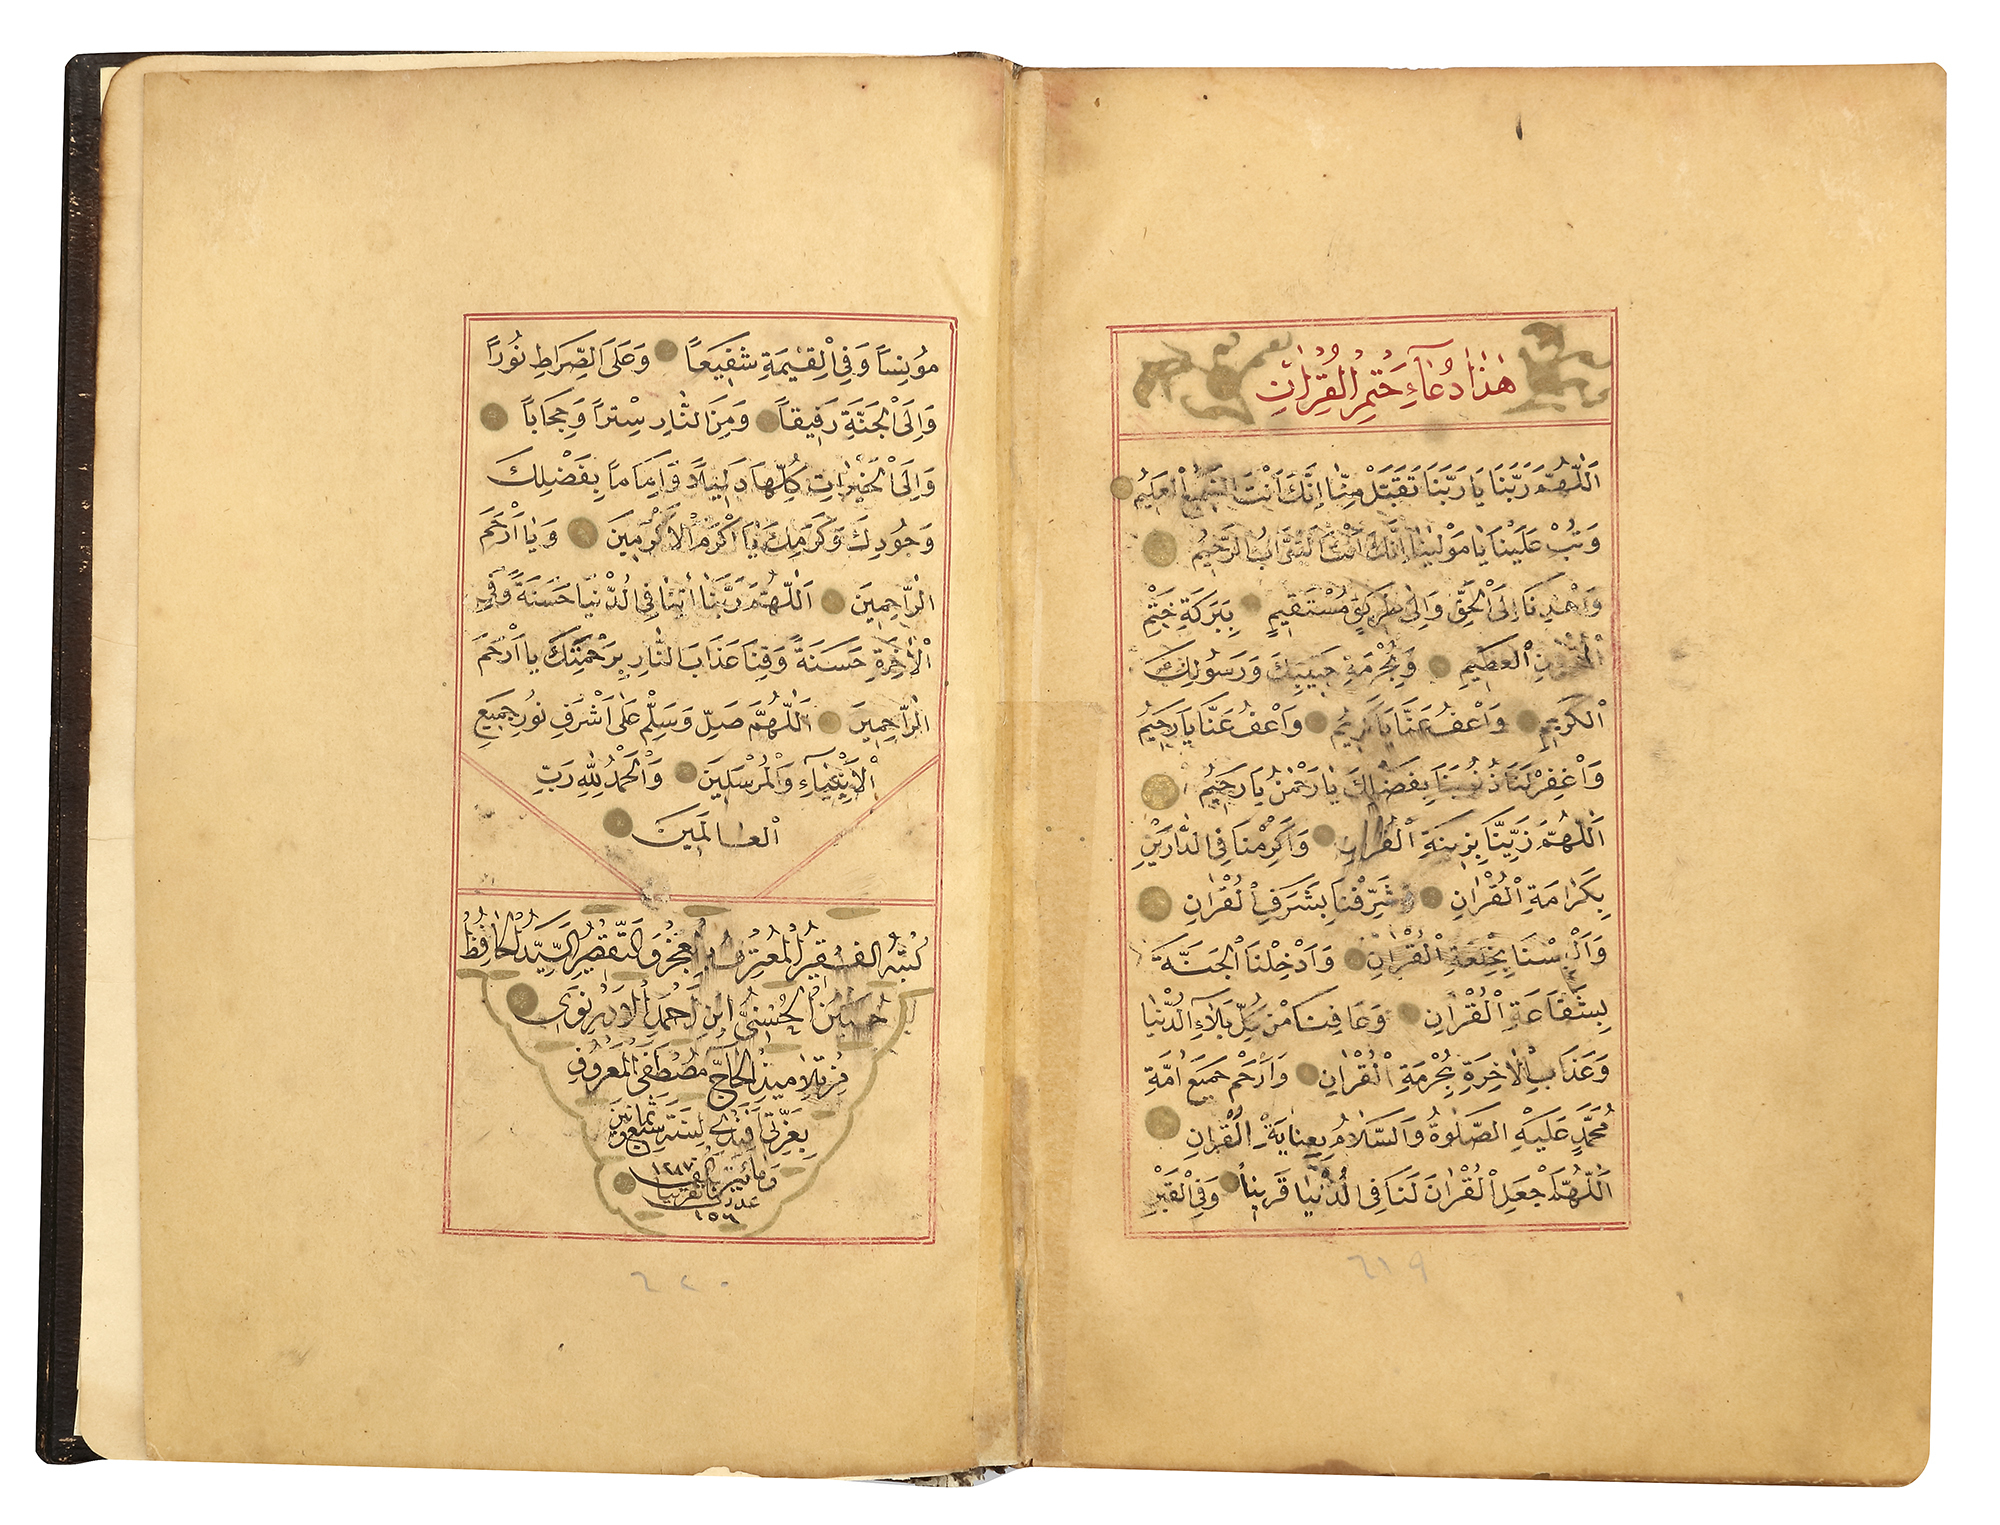 A FINE OTTOMAN QURAN, TURKEY, EDIRNE, WRITTEN BY HUSSEIN AL-HUSNA IBN AHMED AL-ADRUNI, DATED 1287 AH - Image 8 of 8